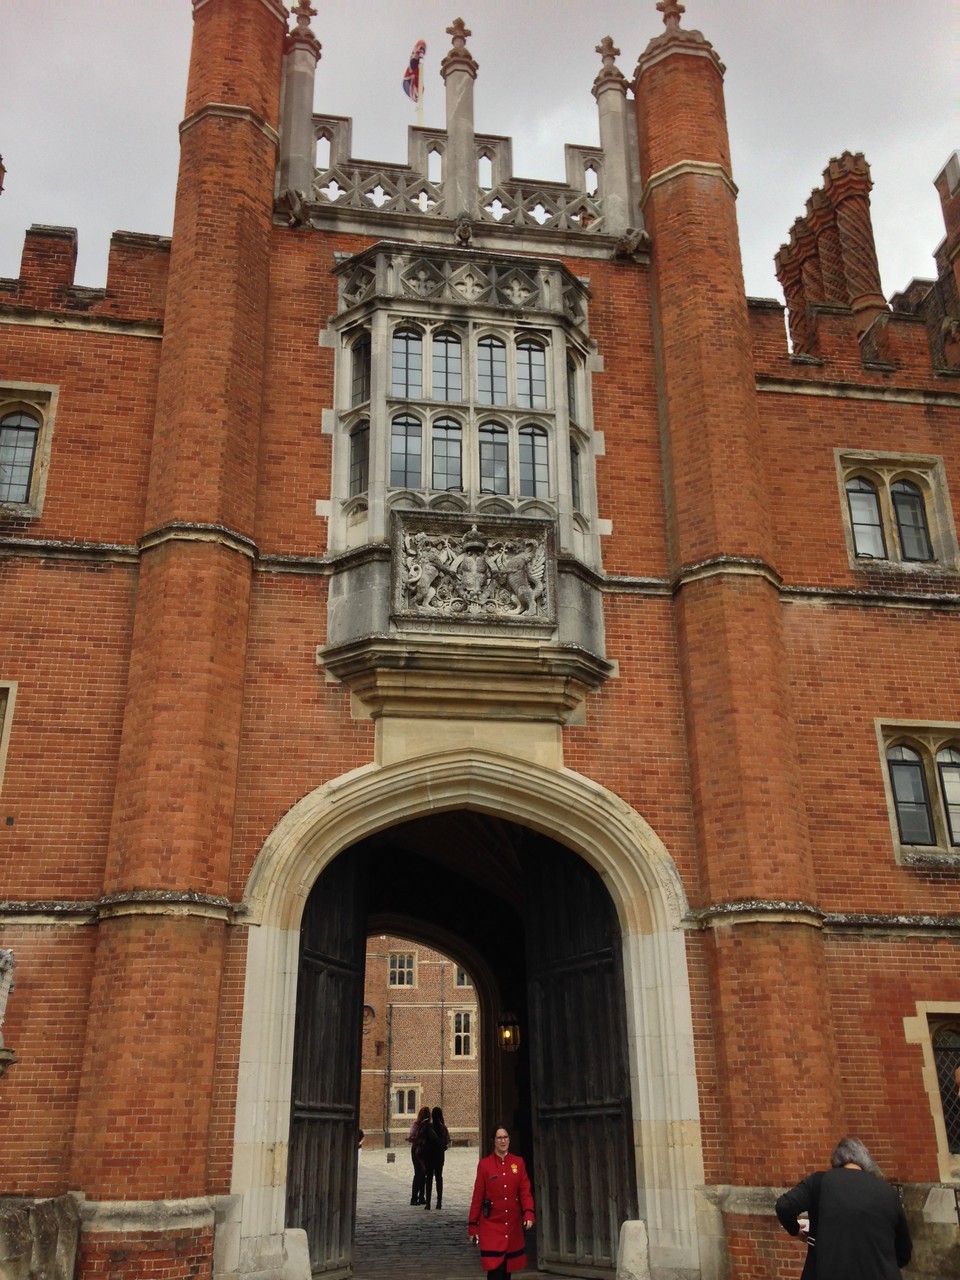 ﾛﾝﾄﾞﾝのﾊﾝﾌﾟﾄﾝｺｰﾄﾊﾟﾚｽ ｶﾞｰﾃﾞﾝ再ｵｰﾌﾟﾝ Hampton Court Palace Gardens ﾛﾝﾄﾞﾝ 穴場 ﾀﾀﾞｶﾞｲﾄﾞ写真編 London Photo Guide Blog Nemi